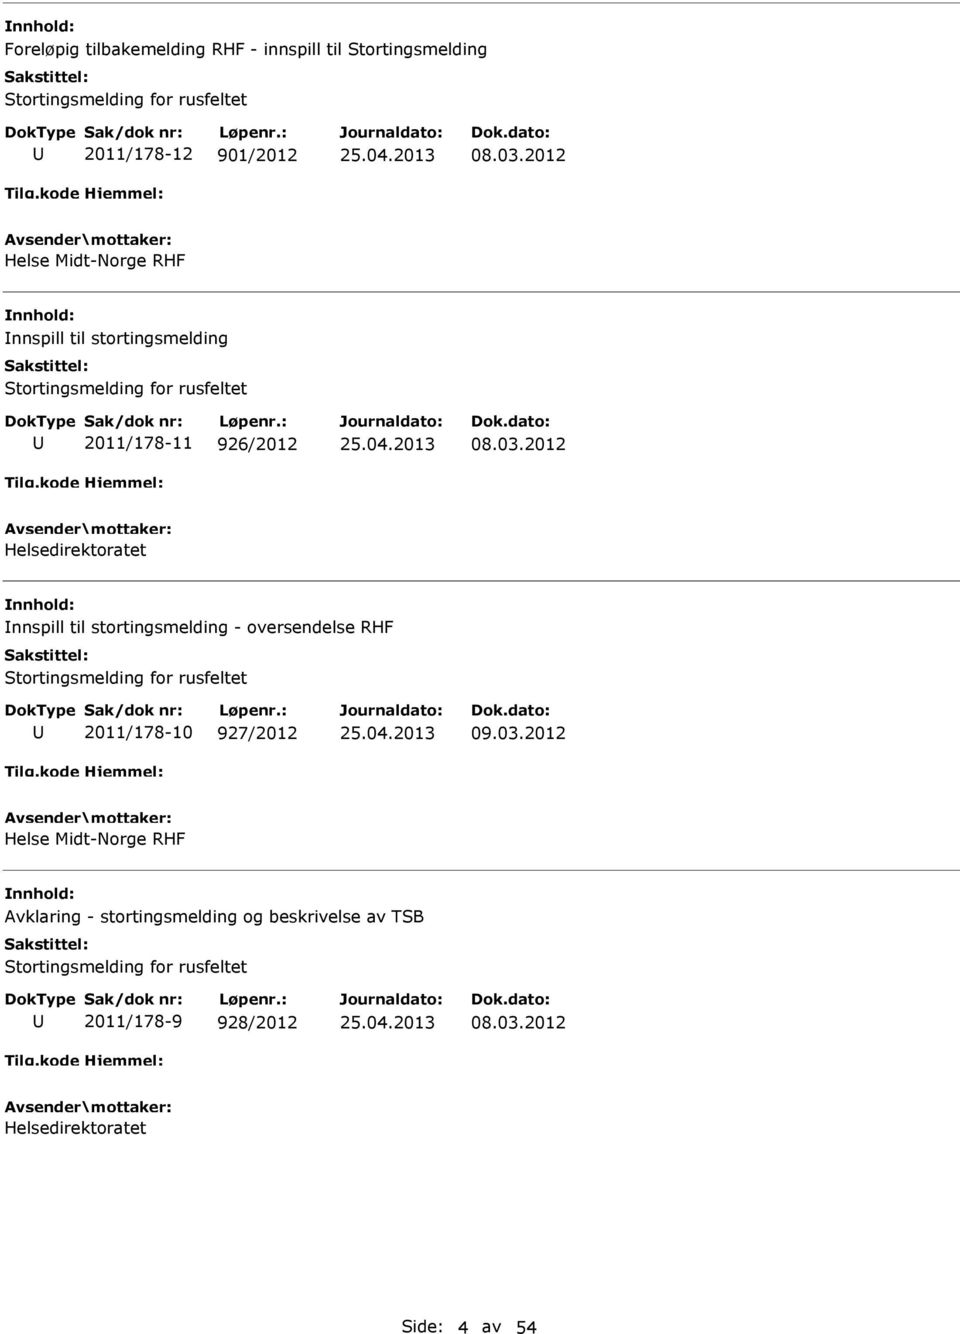 2012 Helsedirektoratet nnspill til stortingsmelding - oversendelse RHF Stortingsmelding for rusfeltet 2011/178-10 927/2012 09.03.